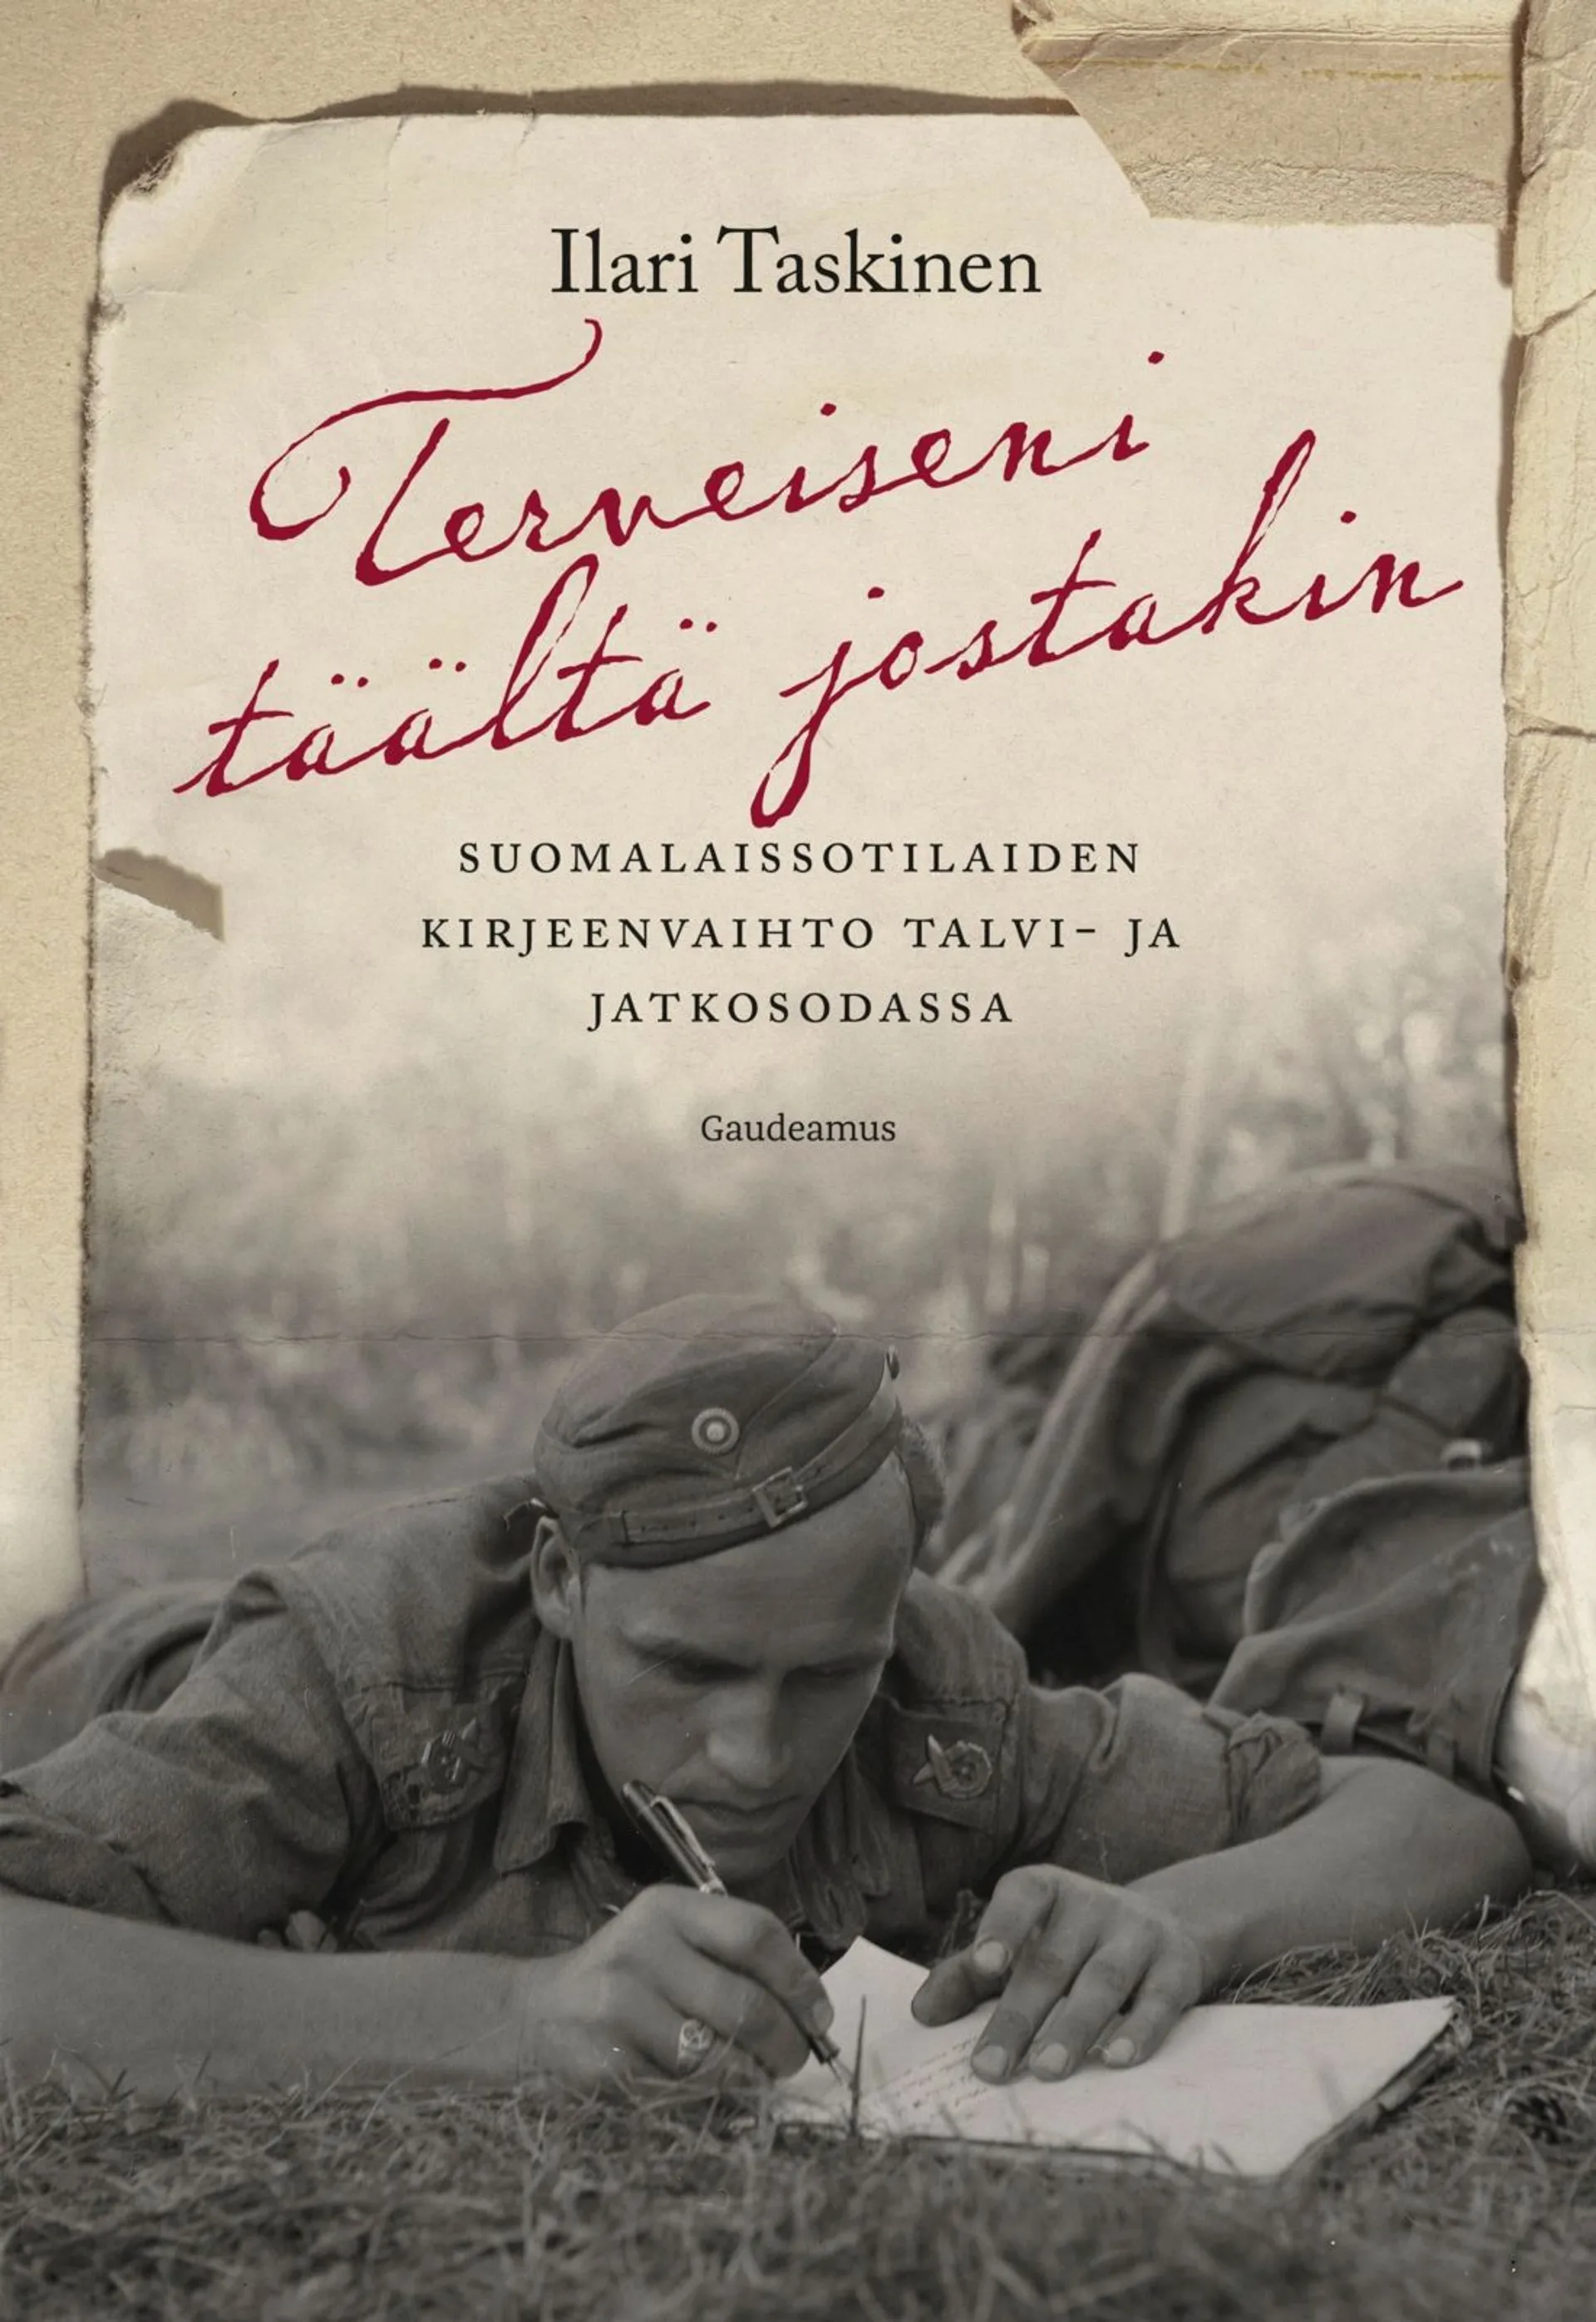 Taskinen, Terveiseni täältä jostakin - Suomalaissotilaiden kirjeenvaihto talvi- ja jatkosodassa